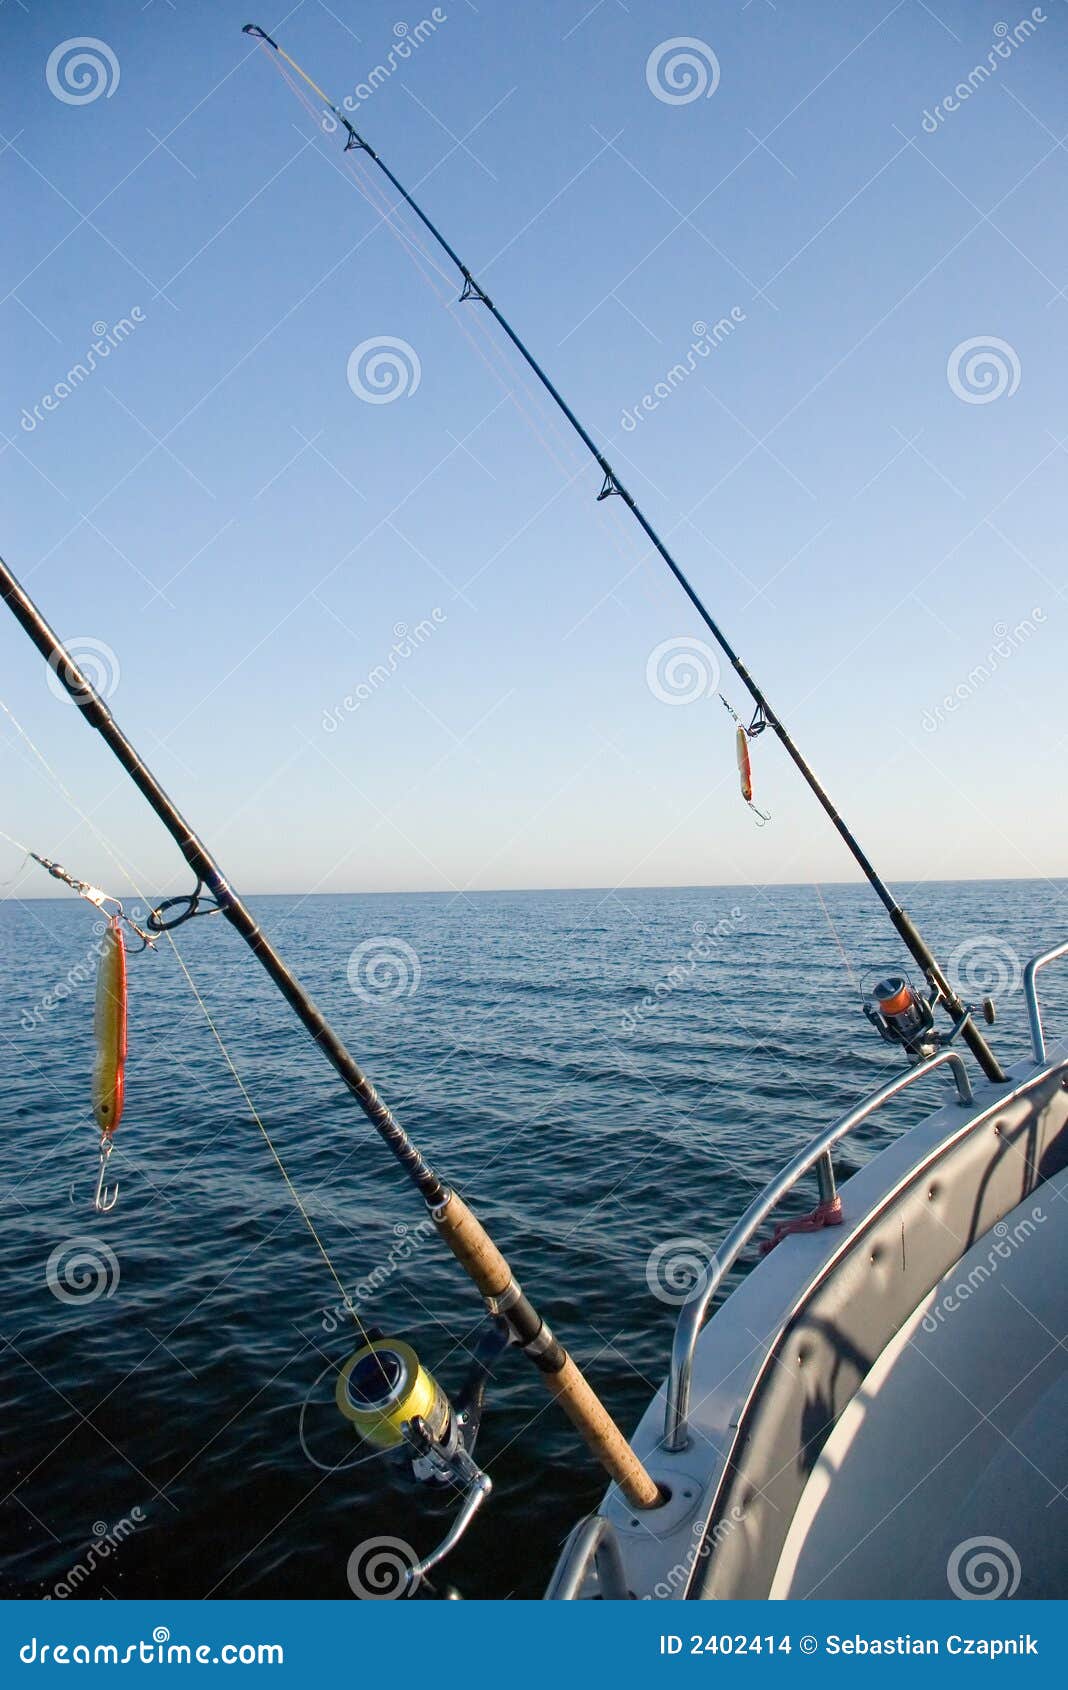 fishing rods at sea.